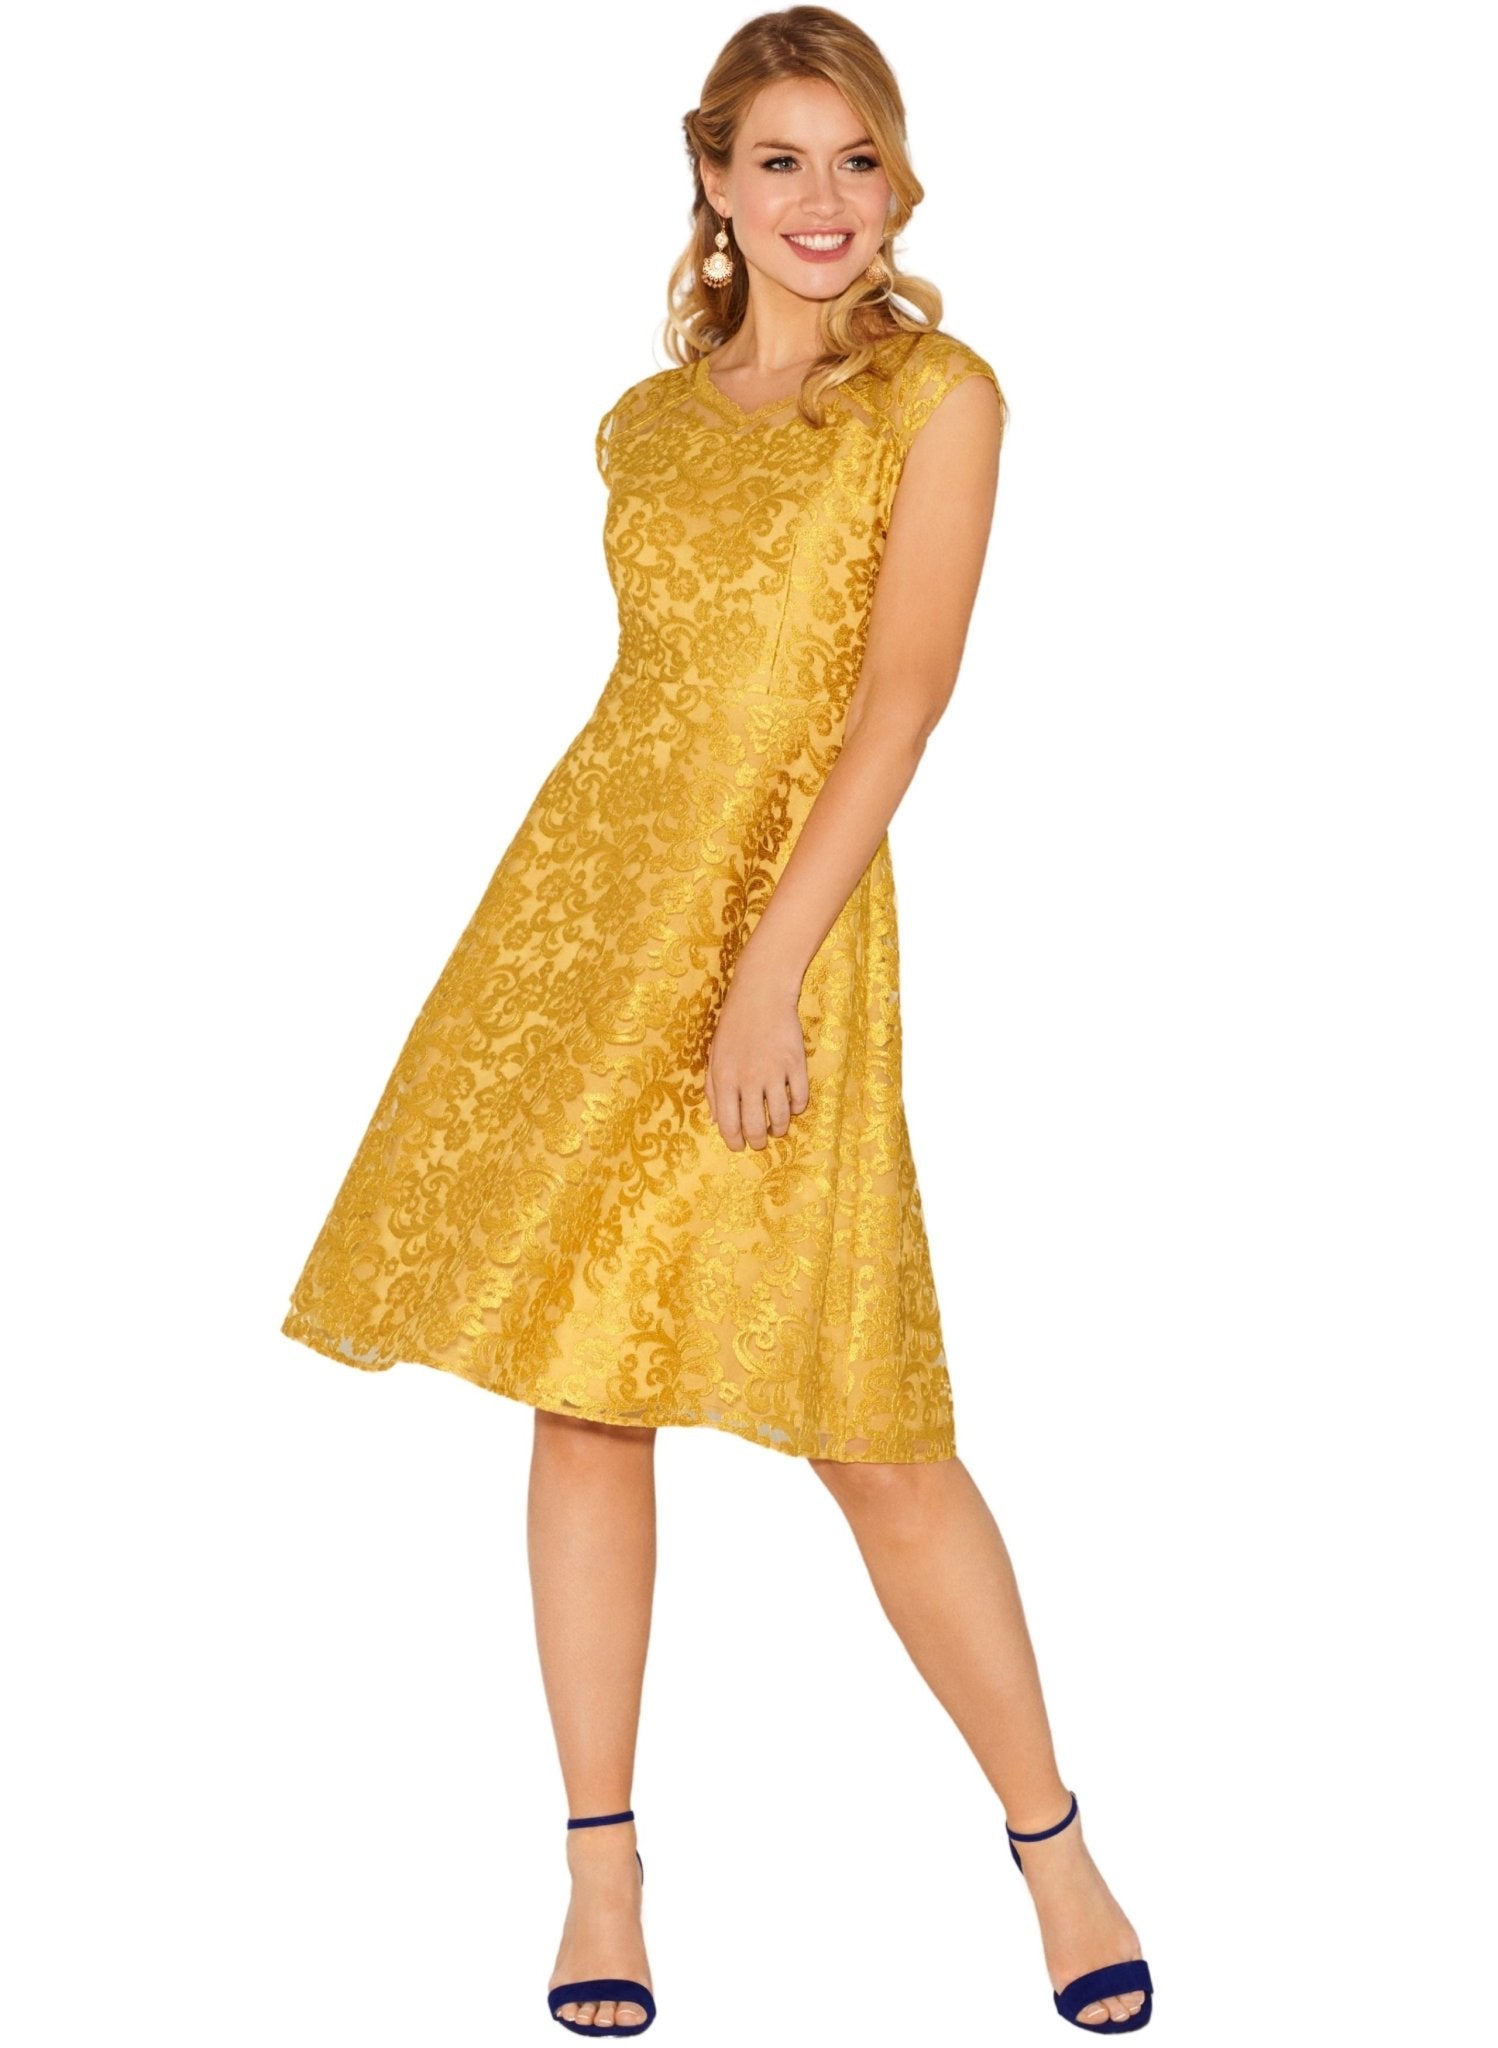 Paris Dress - Saffron Gold - Mums and Bumps